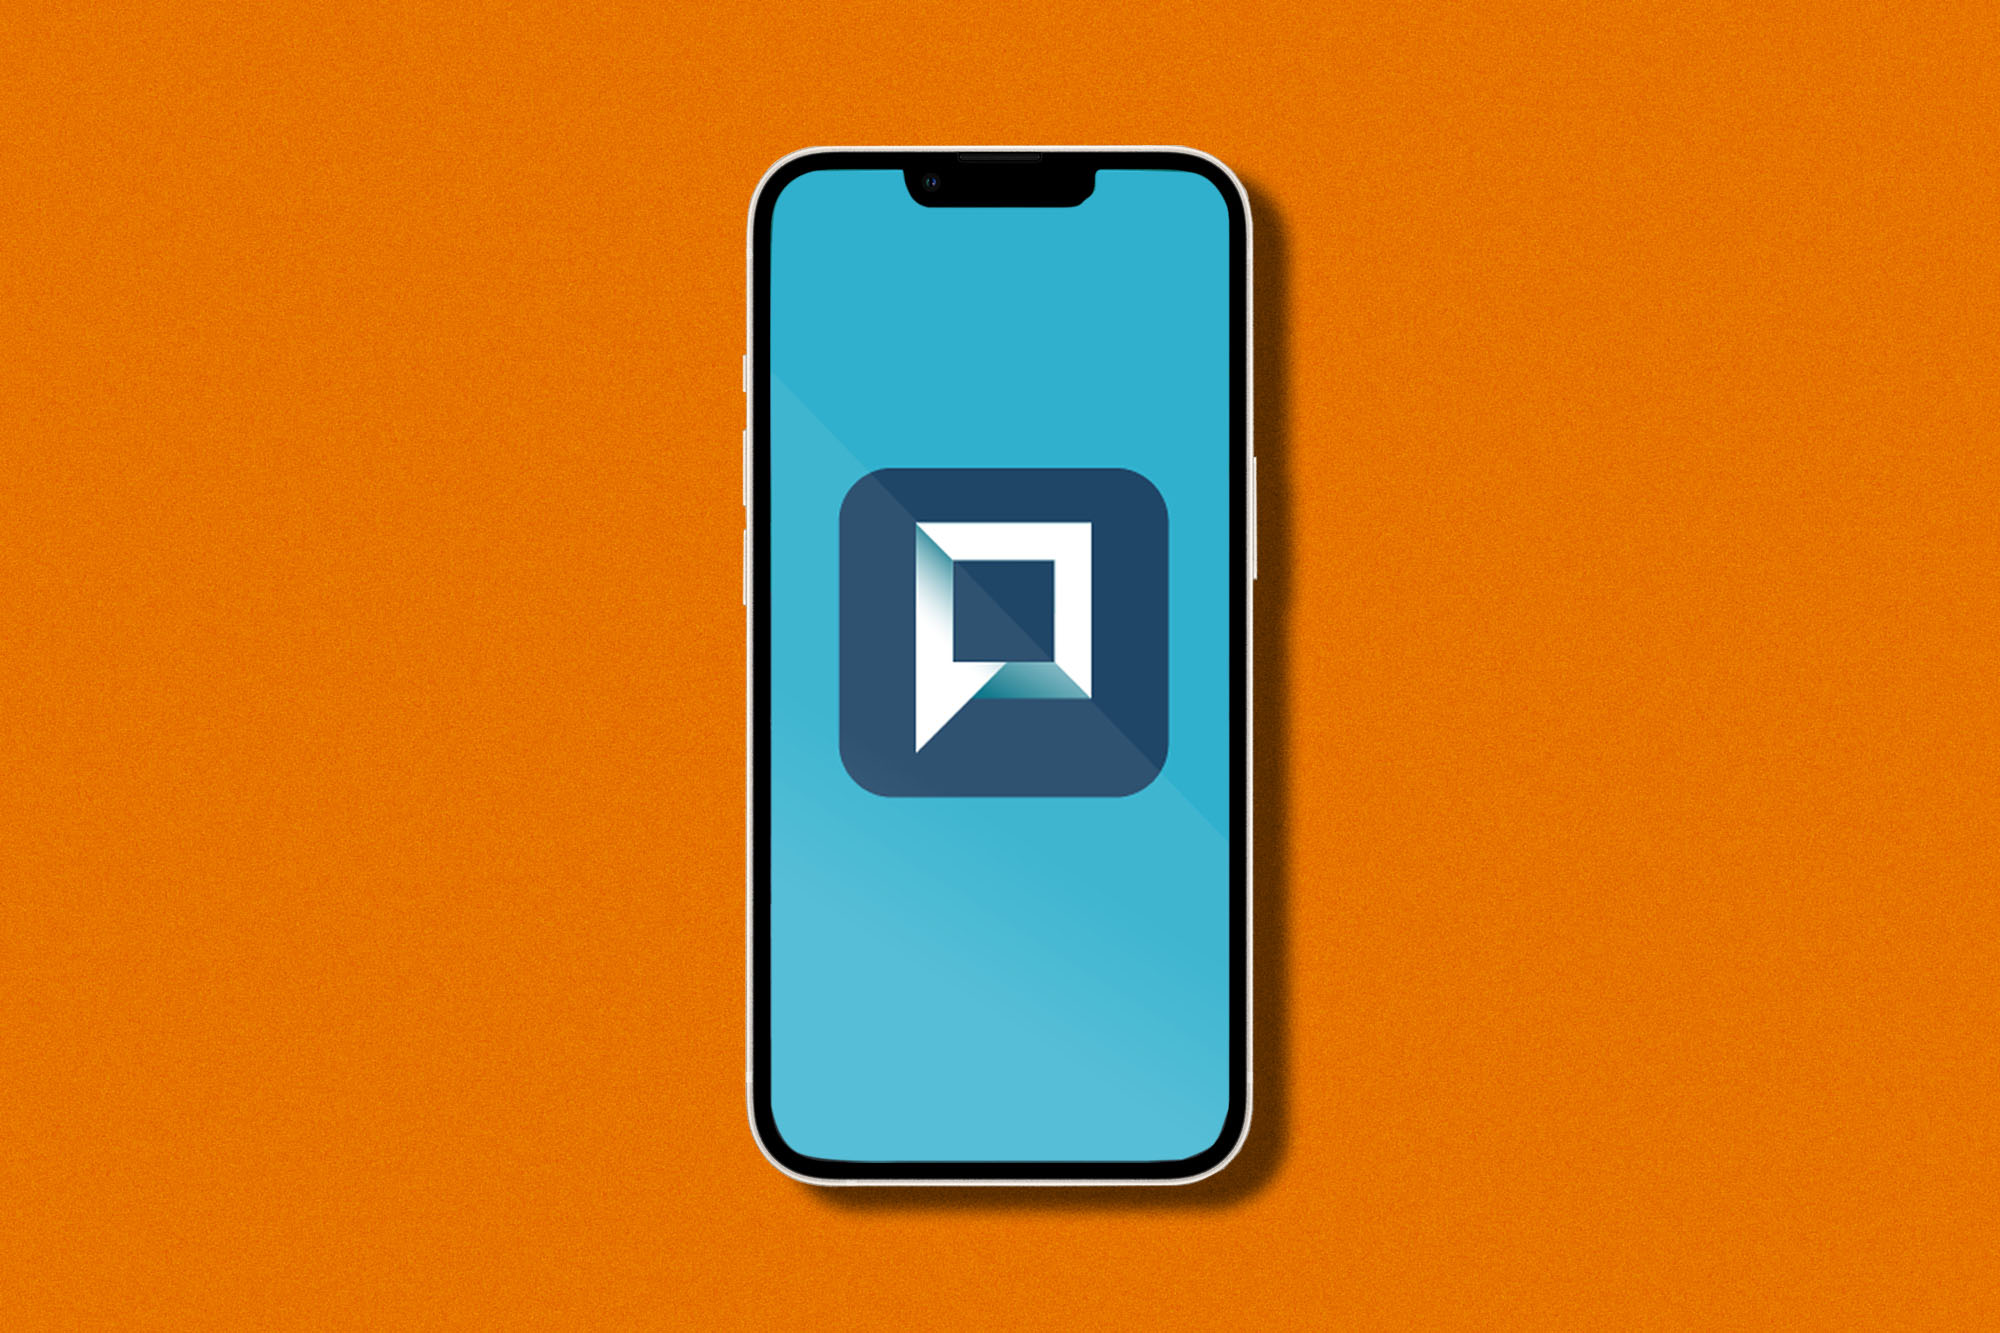 Phone with UVA Telehealth app icon